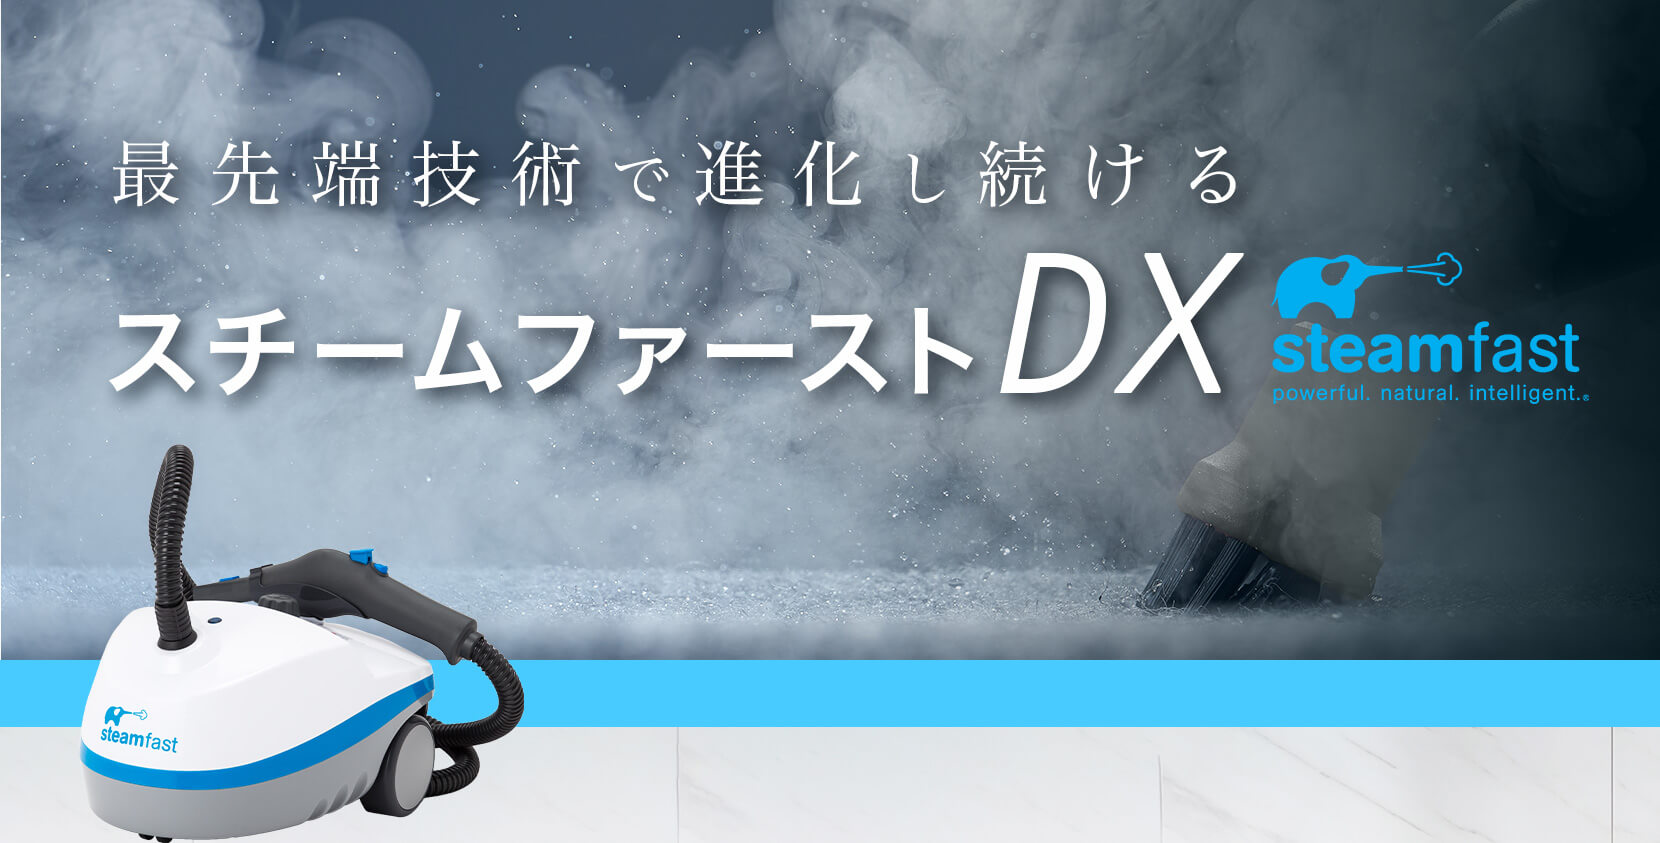 最先端技術で進化し続ける「スチームファーストDX」アメリカ・日本のアマゾンでもダントツの高評価